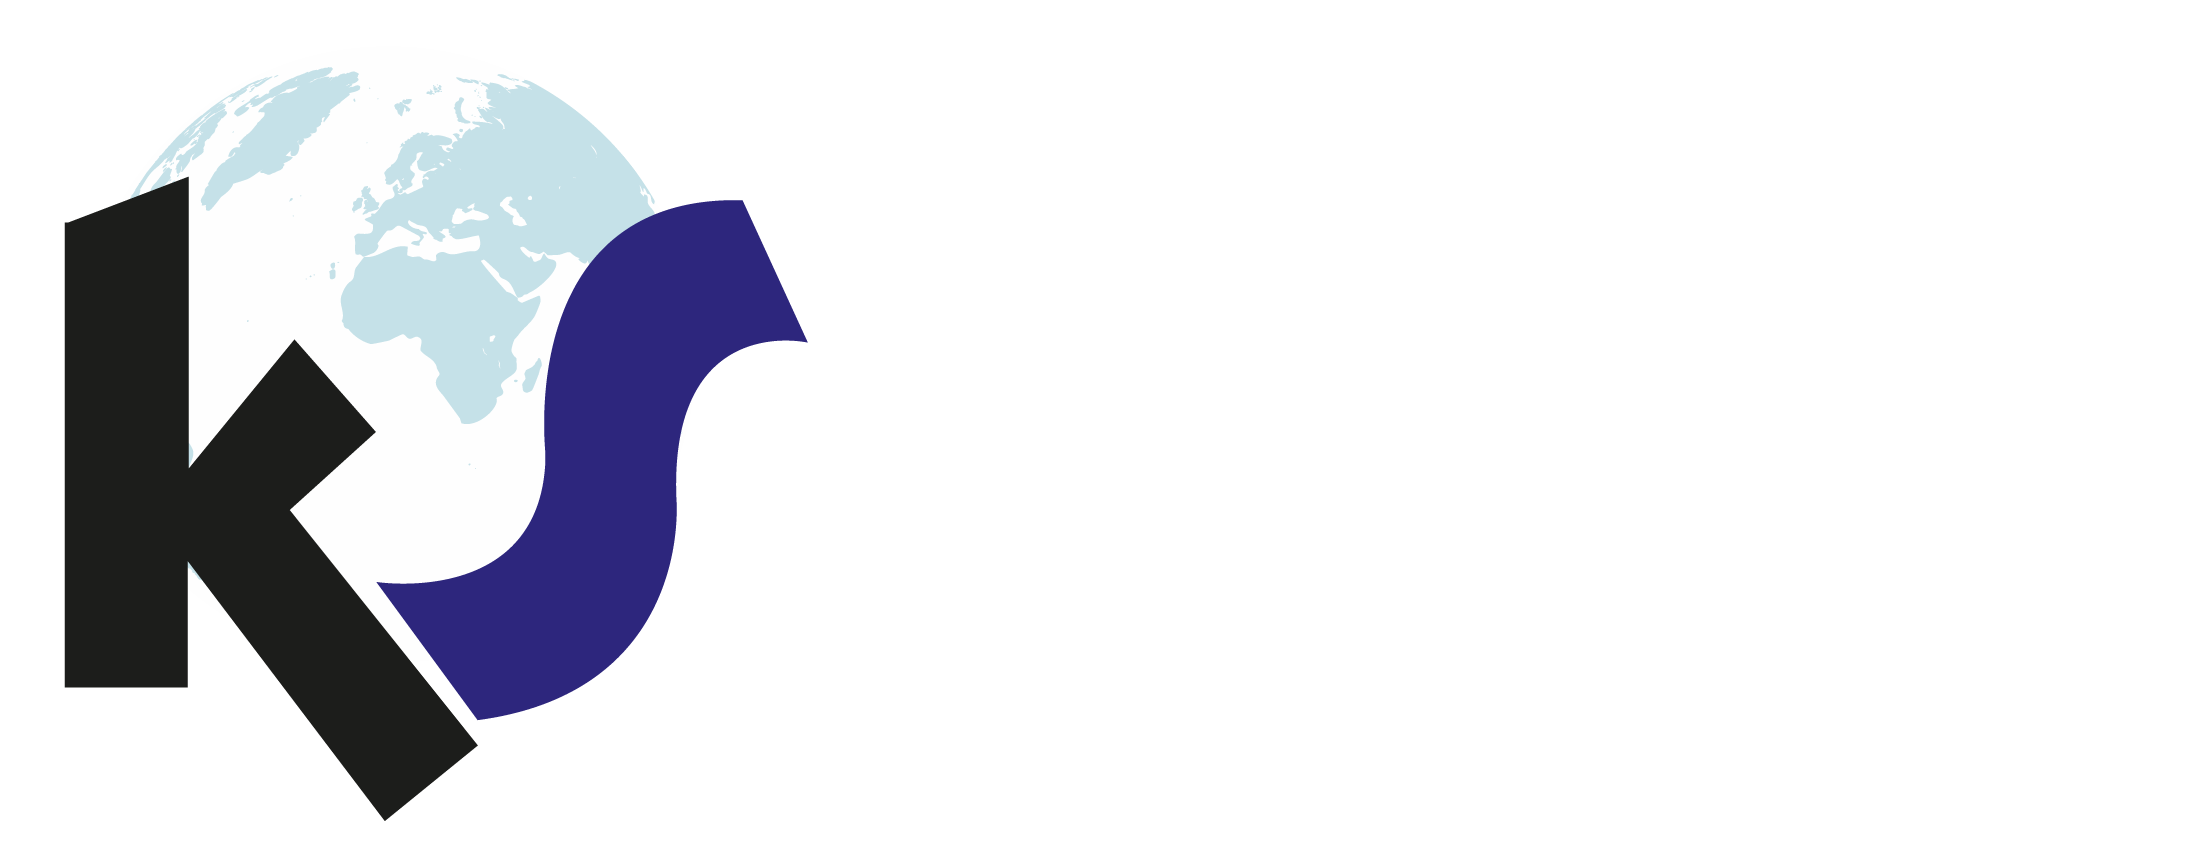 Global-logistic-LOGO-SİYAH-BEYAZ.png